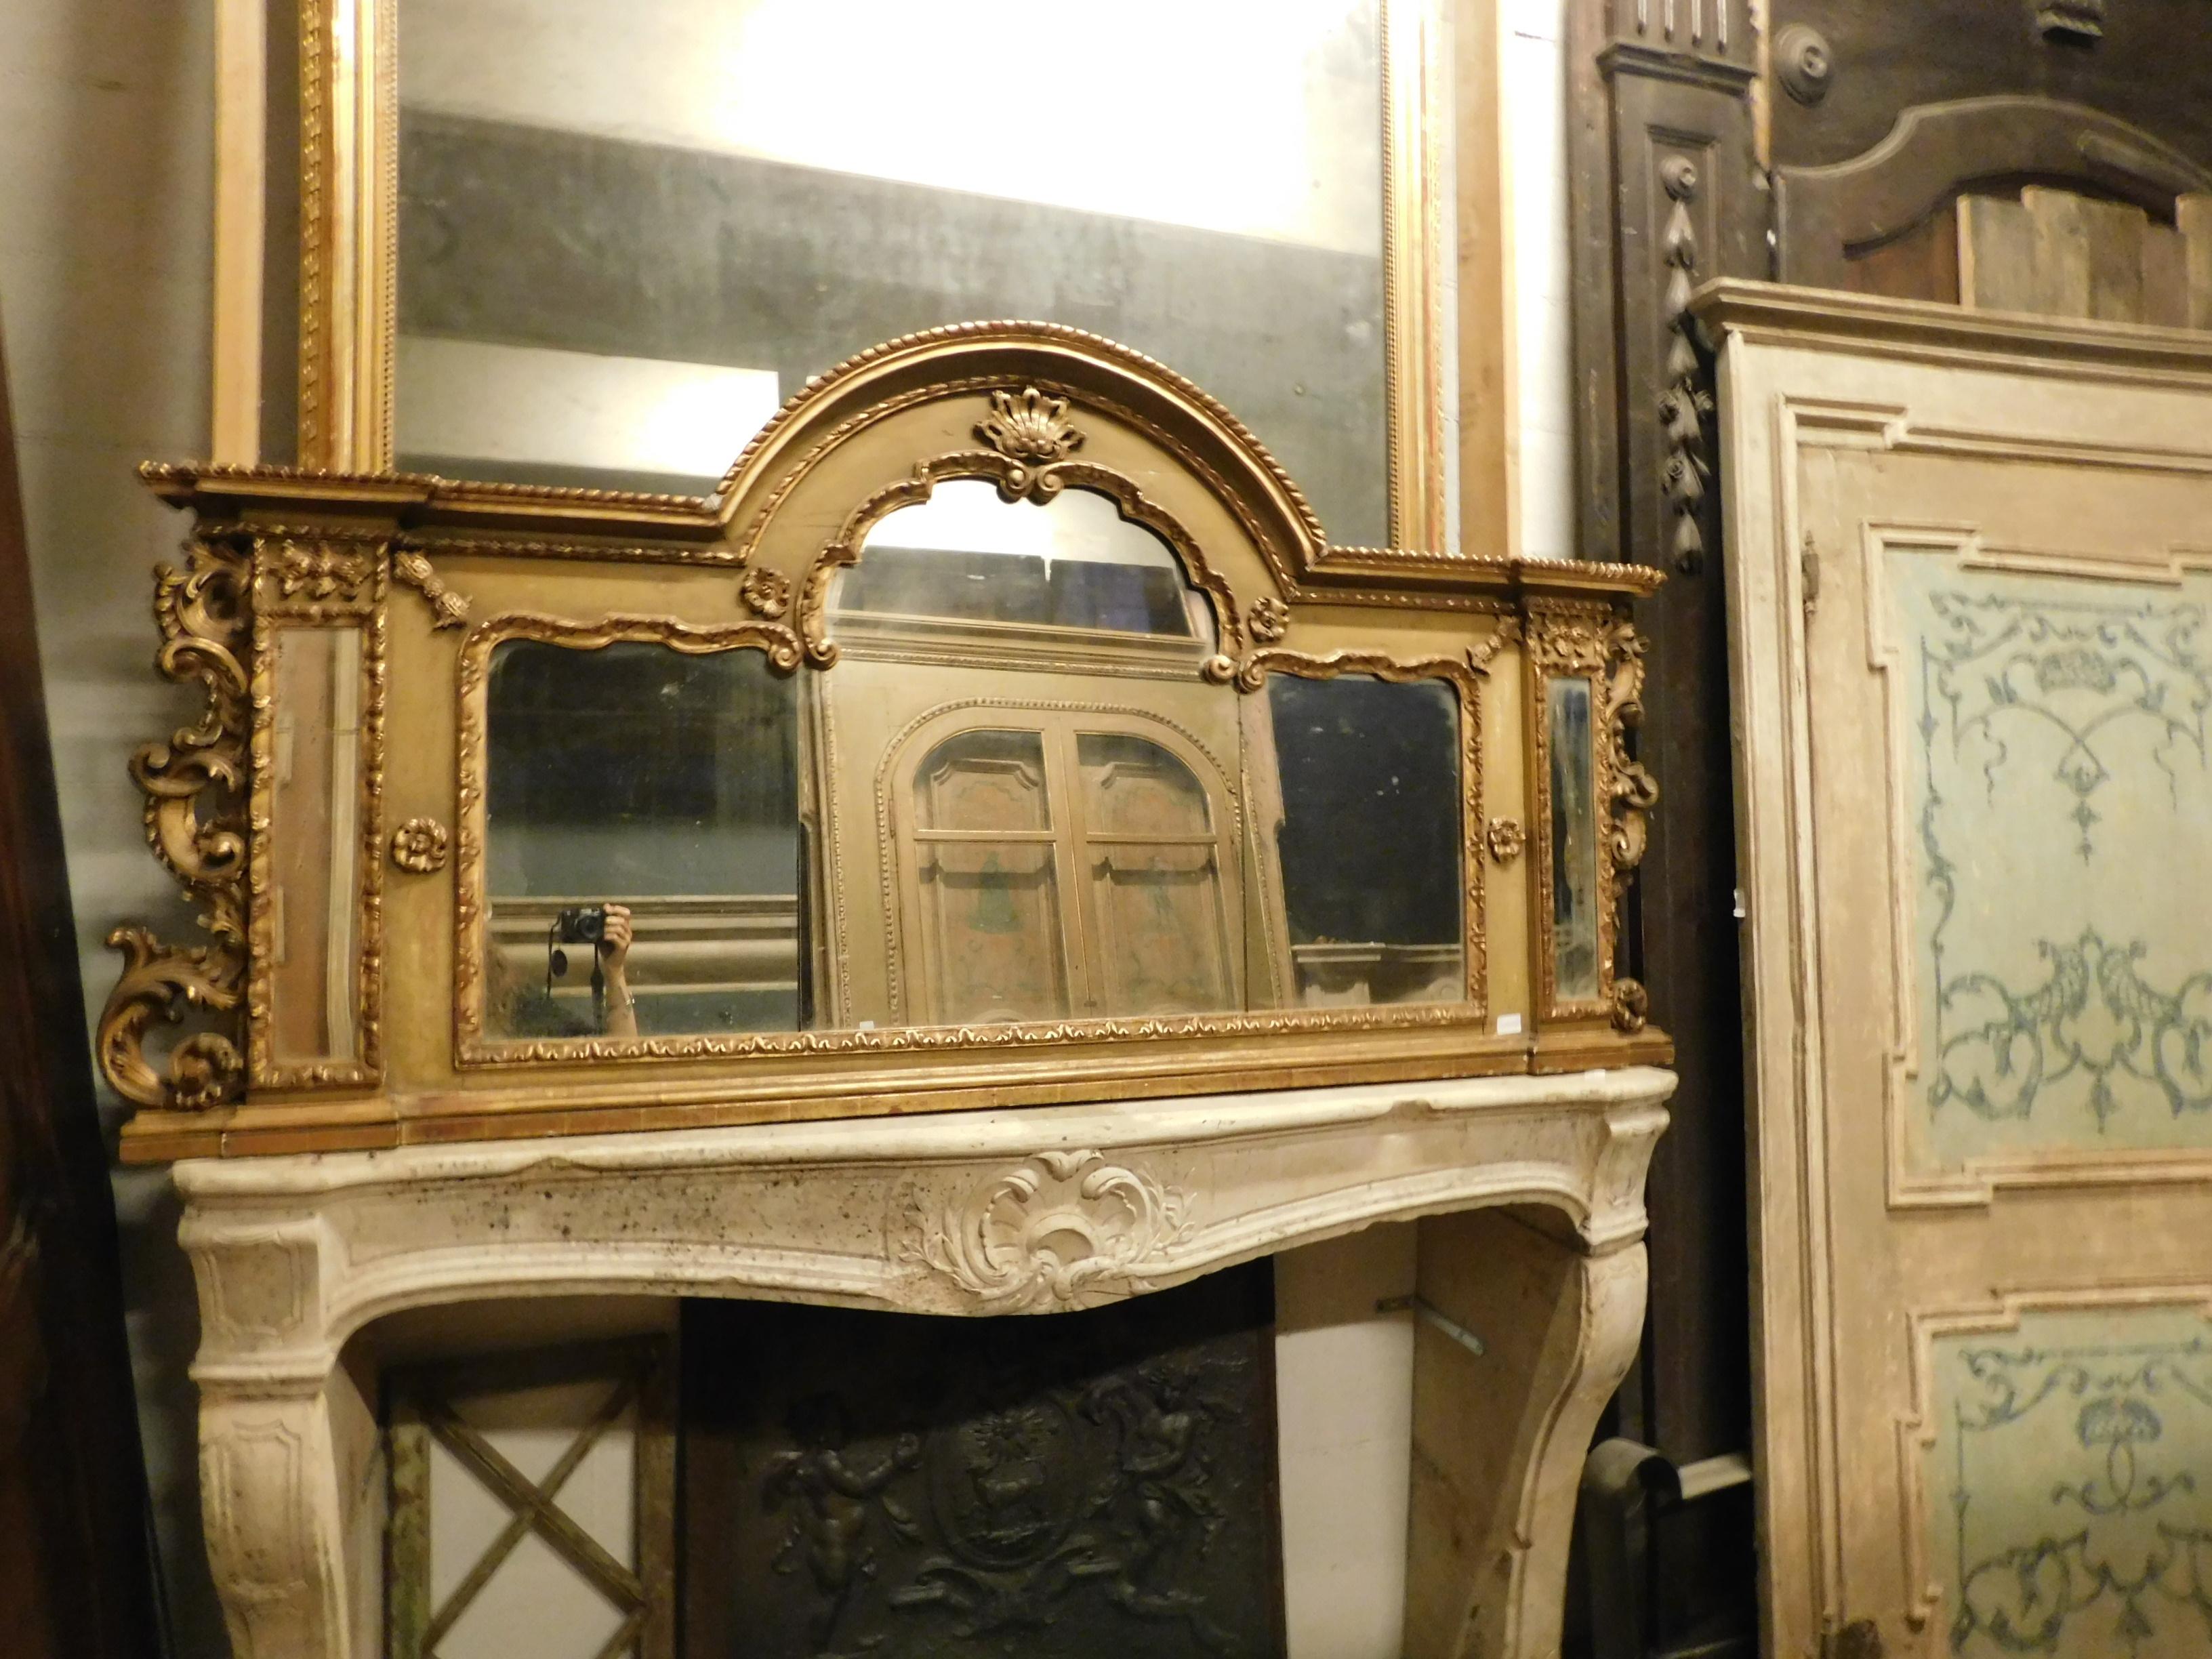 Antiker Holzspiegel, rechteckige Form mit zentralem Bogenteil, reich geschnitzter Holzrahmen, lackiert und vergoldet, Dekoration mit Blumen und Formen der Zeit, handgefertigt im 20. Jahrhundert in Italien.
Ideal in einem Badezimmer, da seine Form,